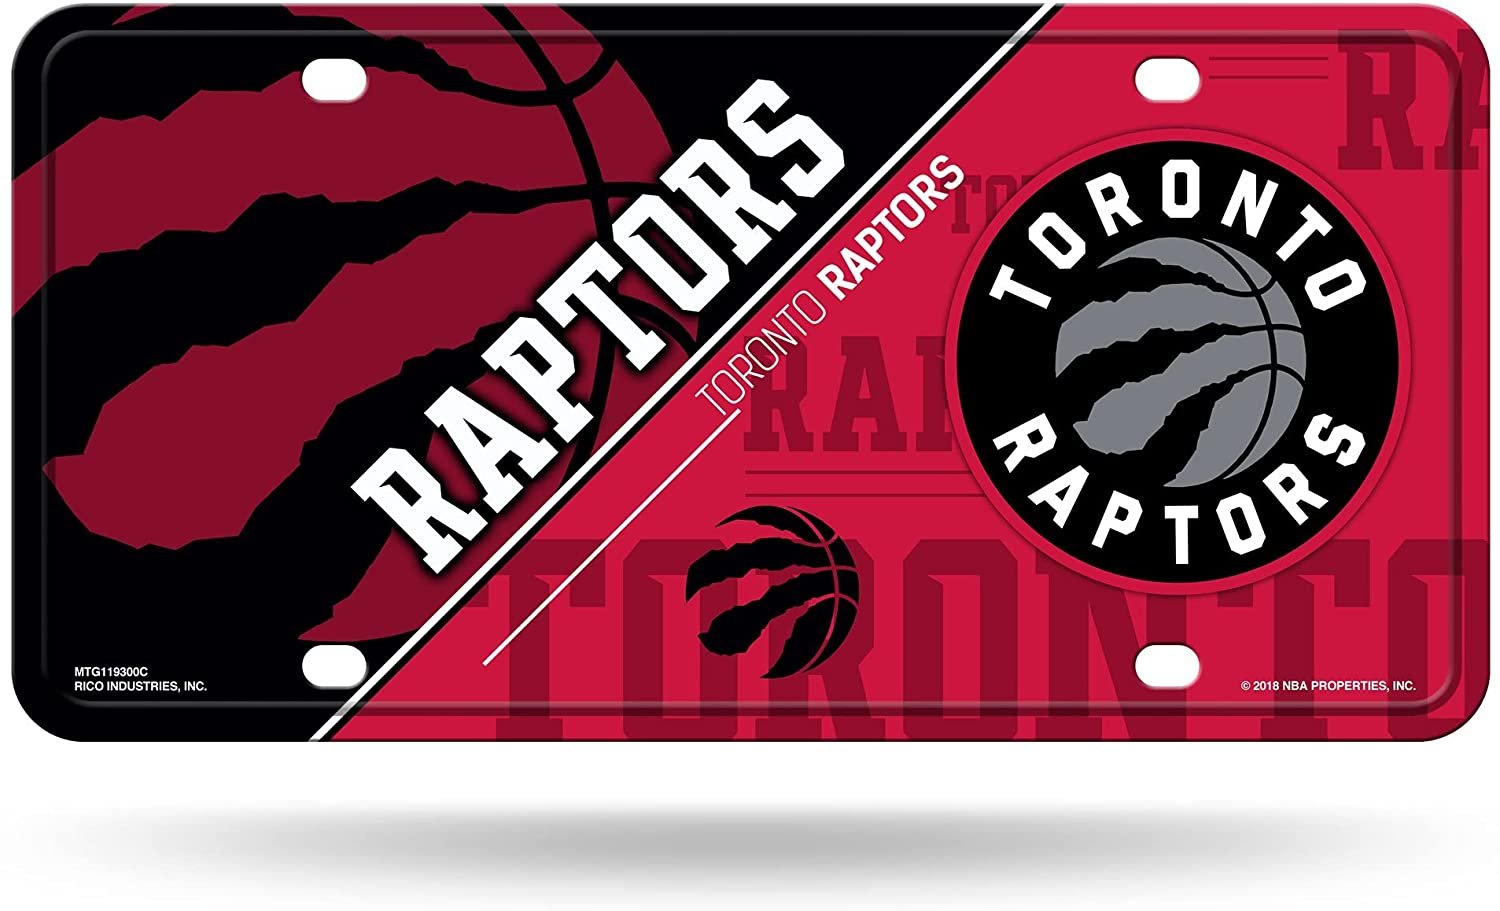 Toronto Raptors Metal Tag License Plate Novelty 6x12 Inch Split Design